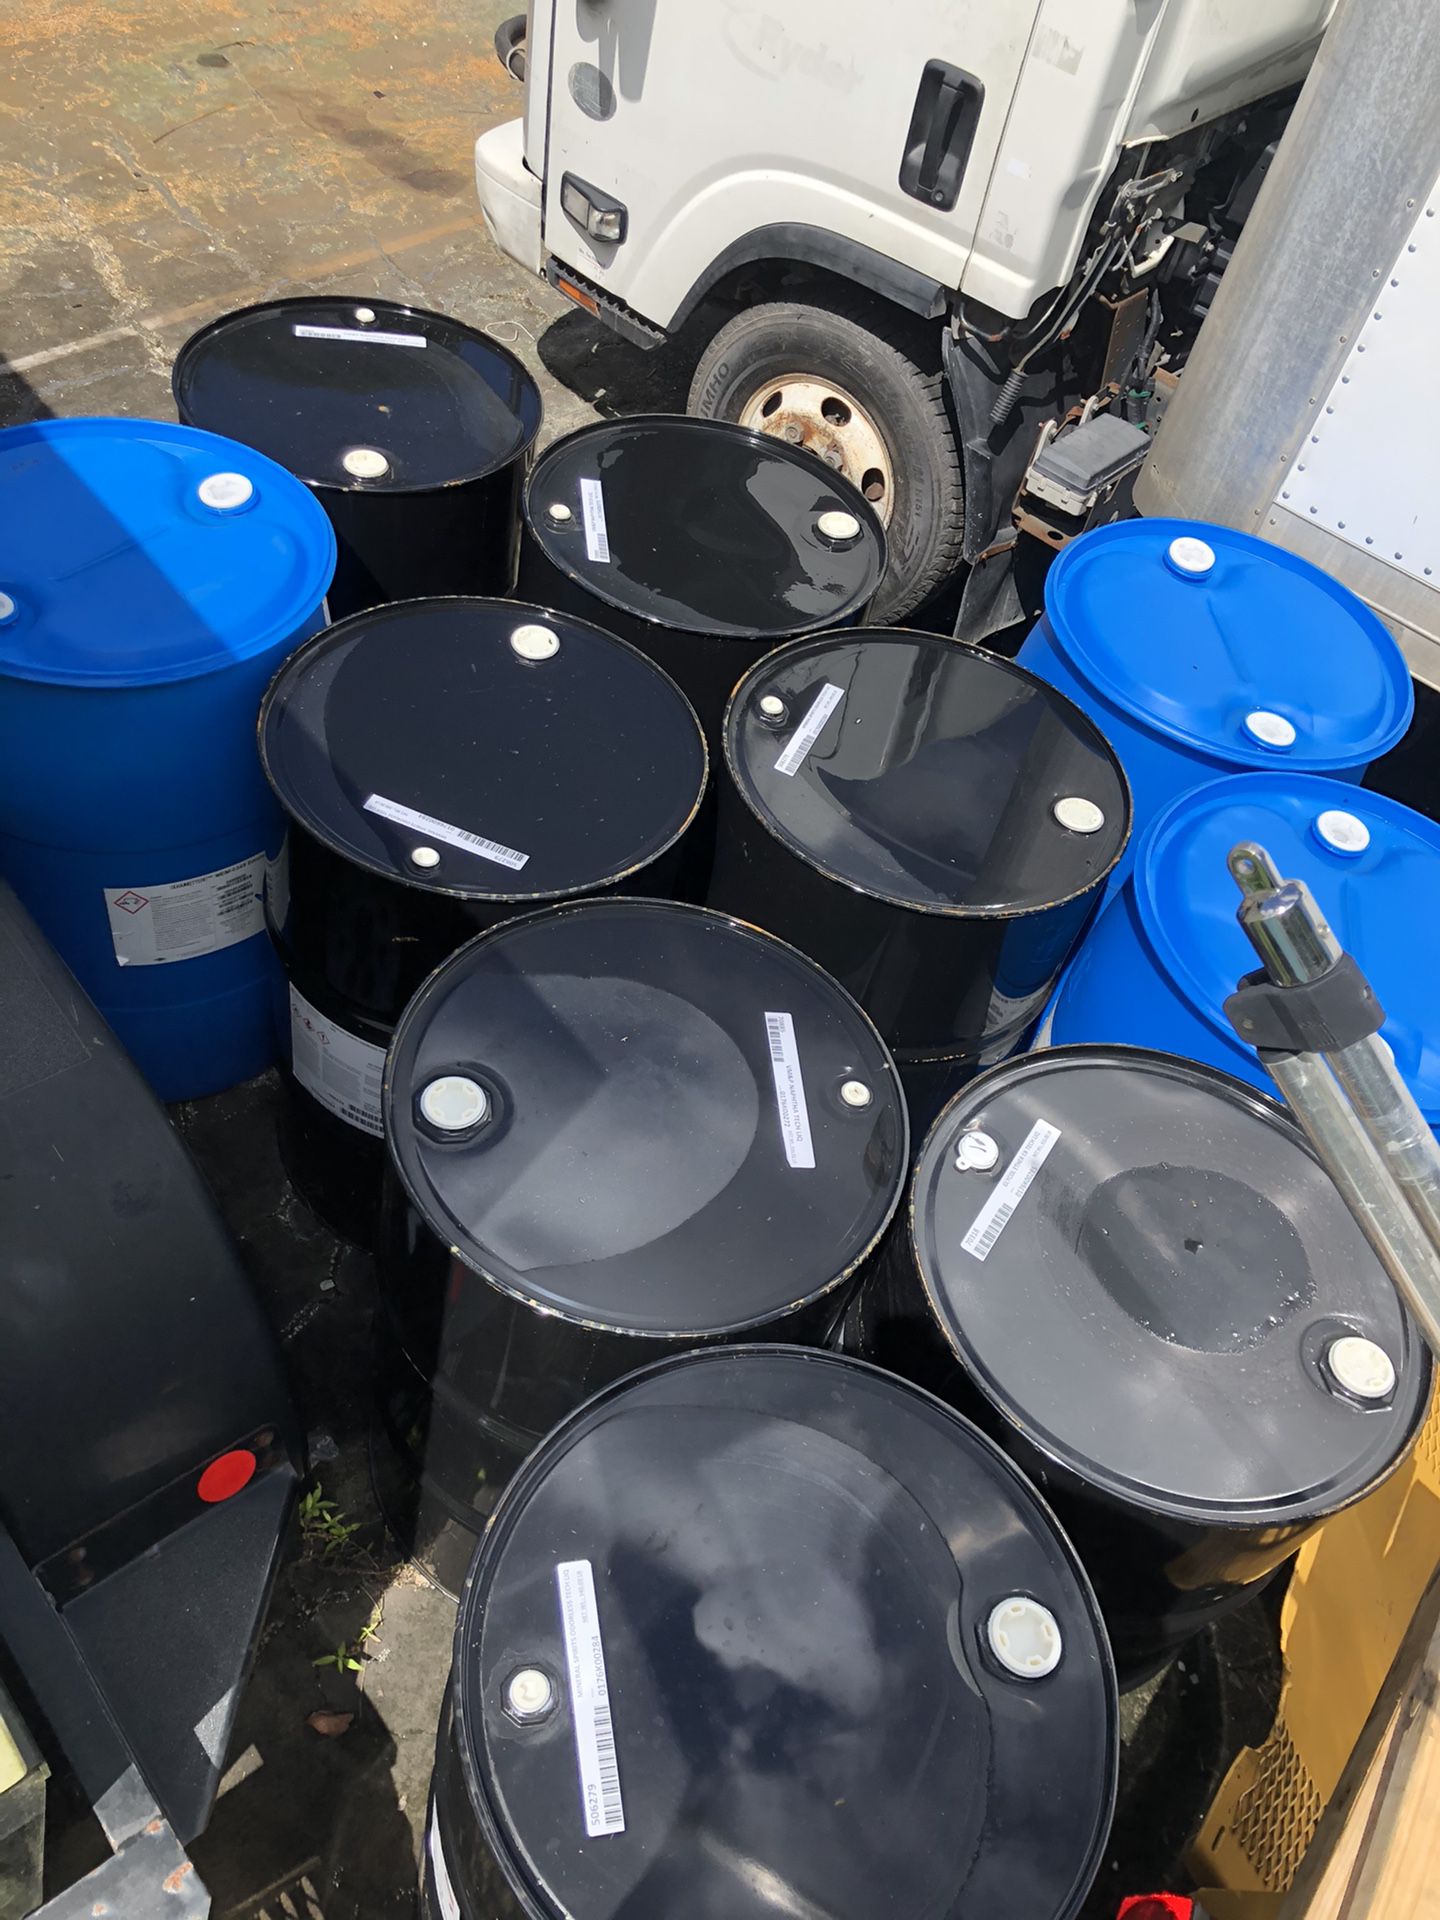 55 gallon drums/barrels metal/plastic